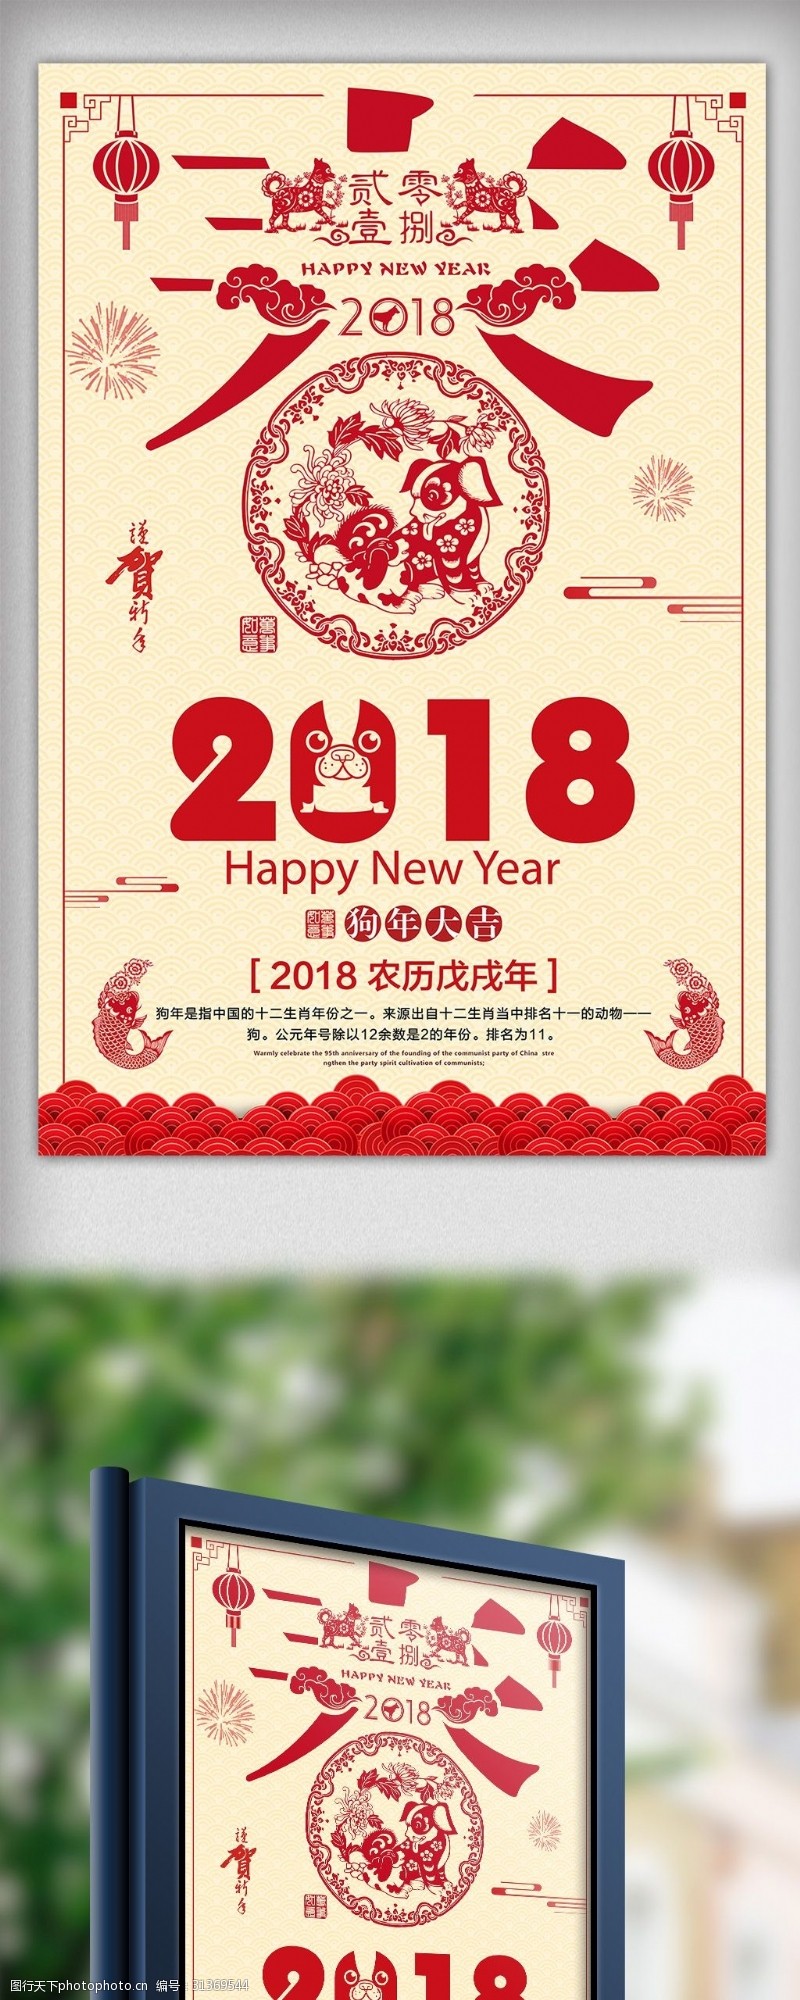 团年饭海报2018狗年春节春字剪纸风格节日海报